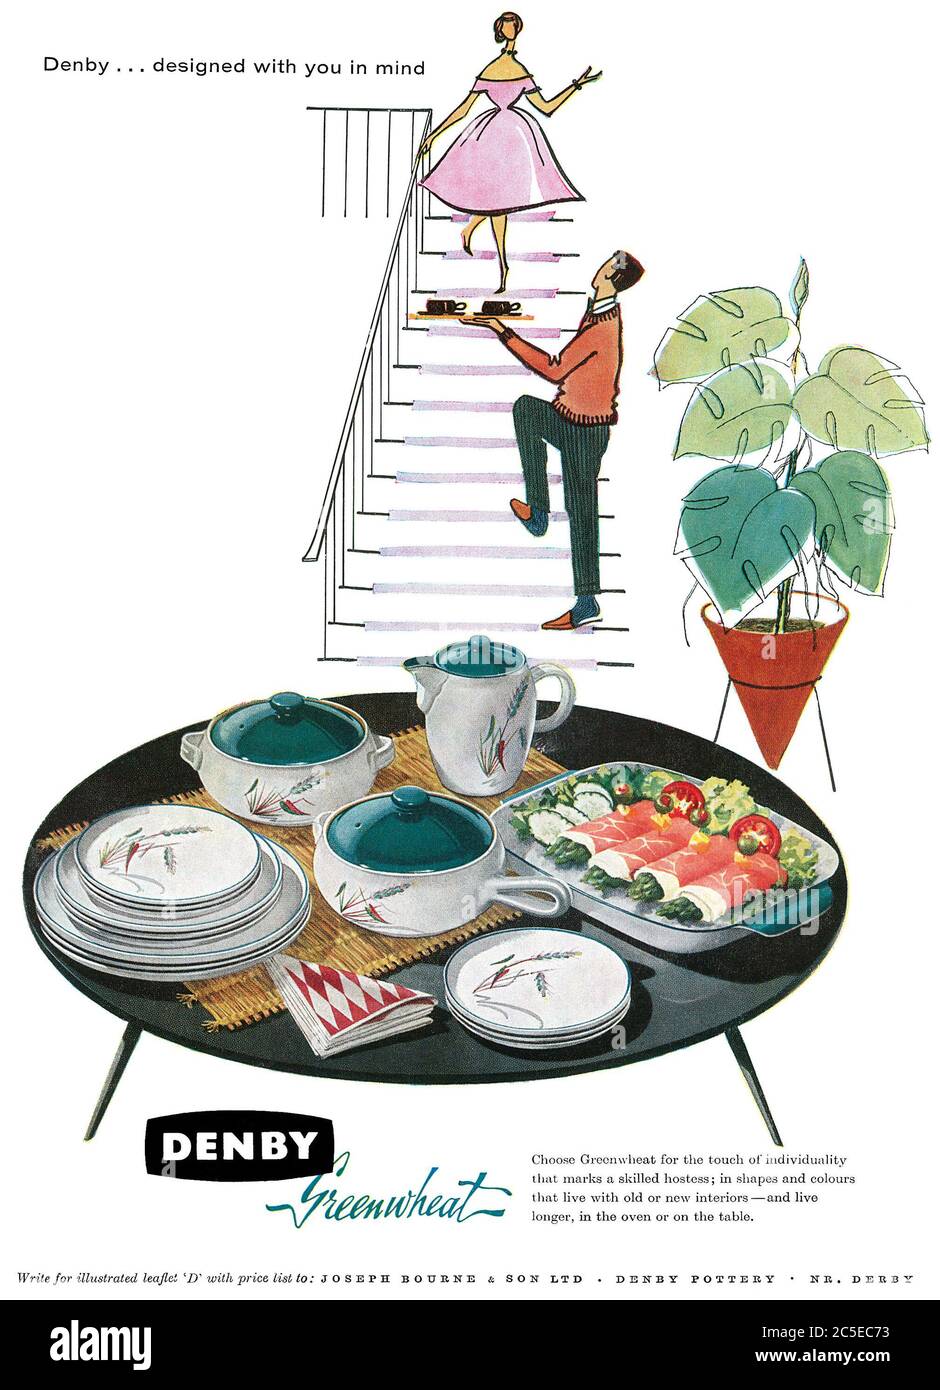 Denby pottery Banque de photographies et d'images à haute résolution - Alamy